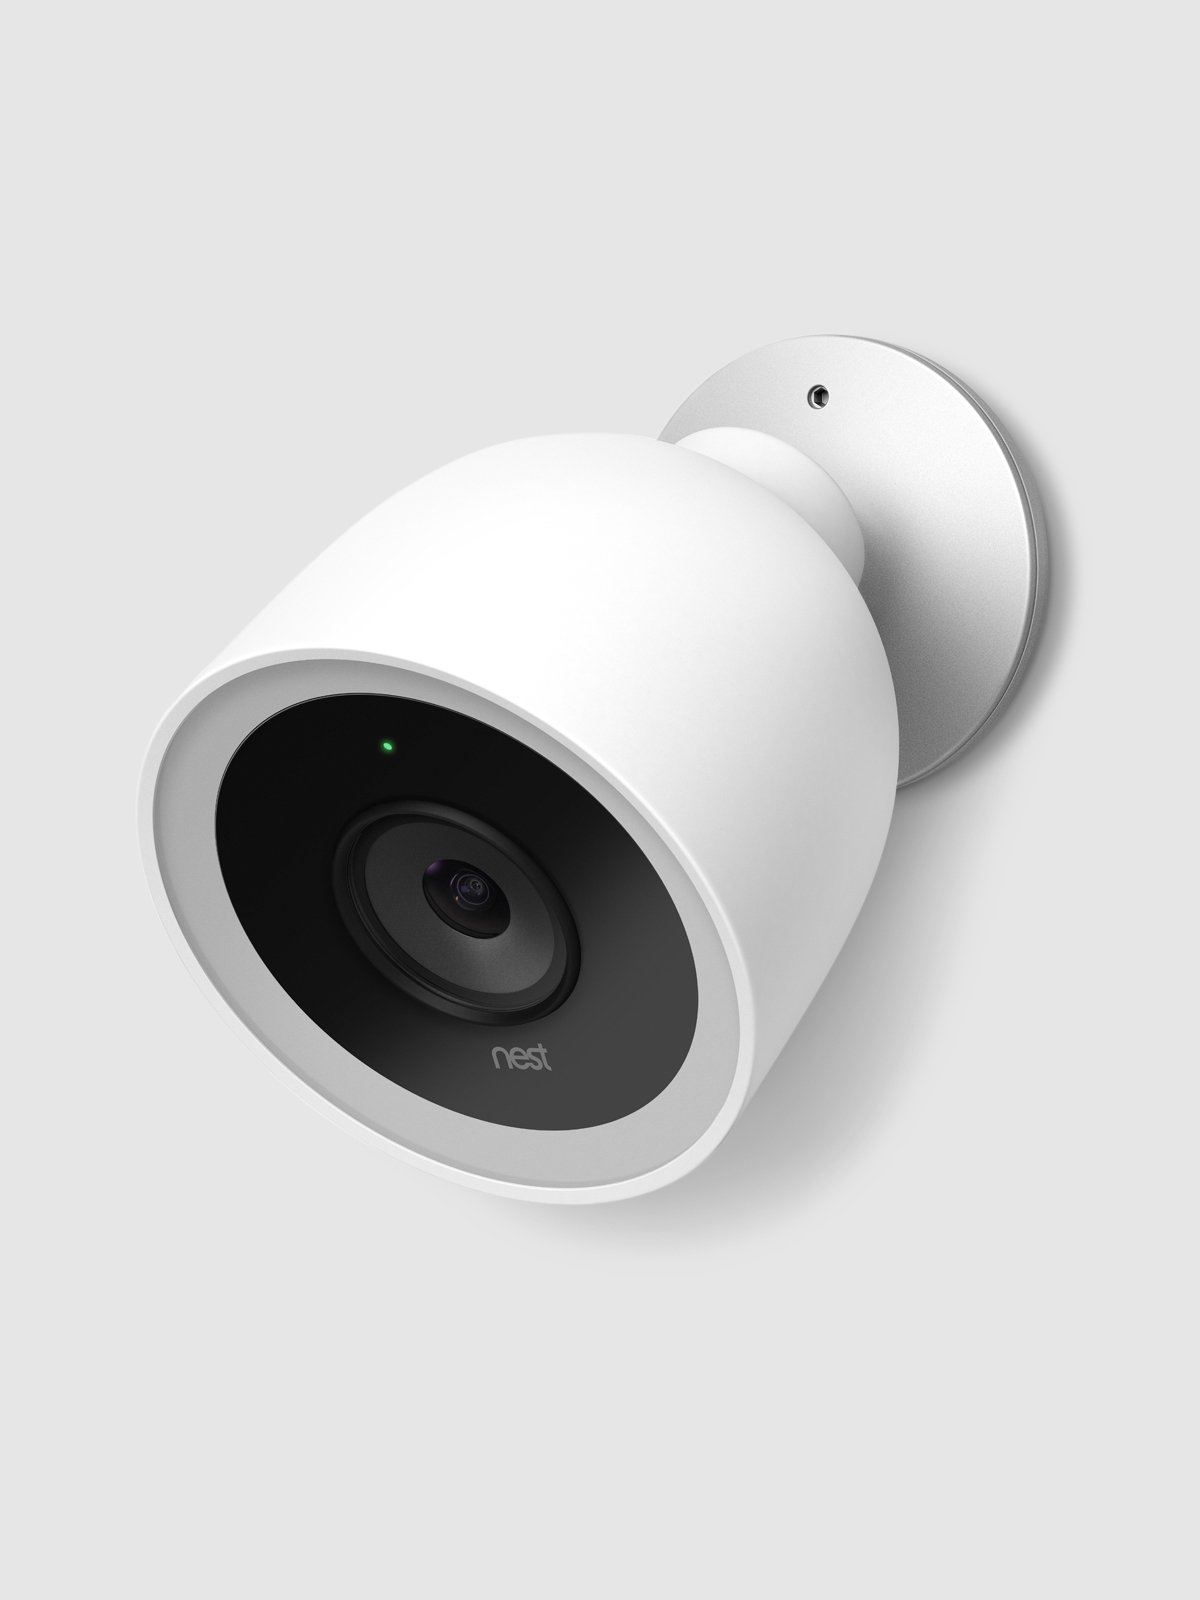 download google nest cameras